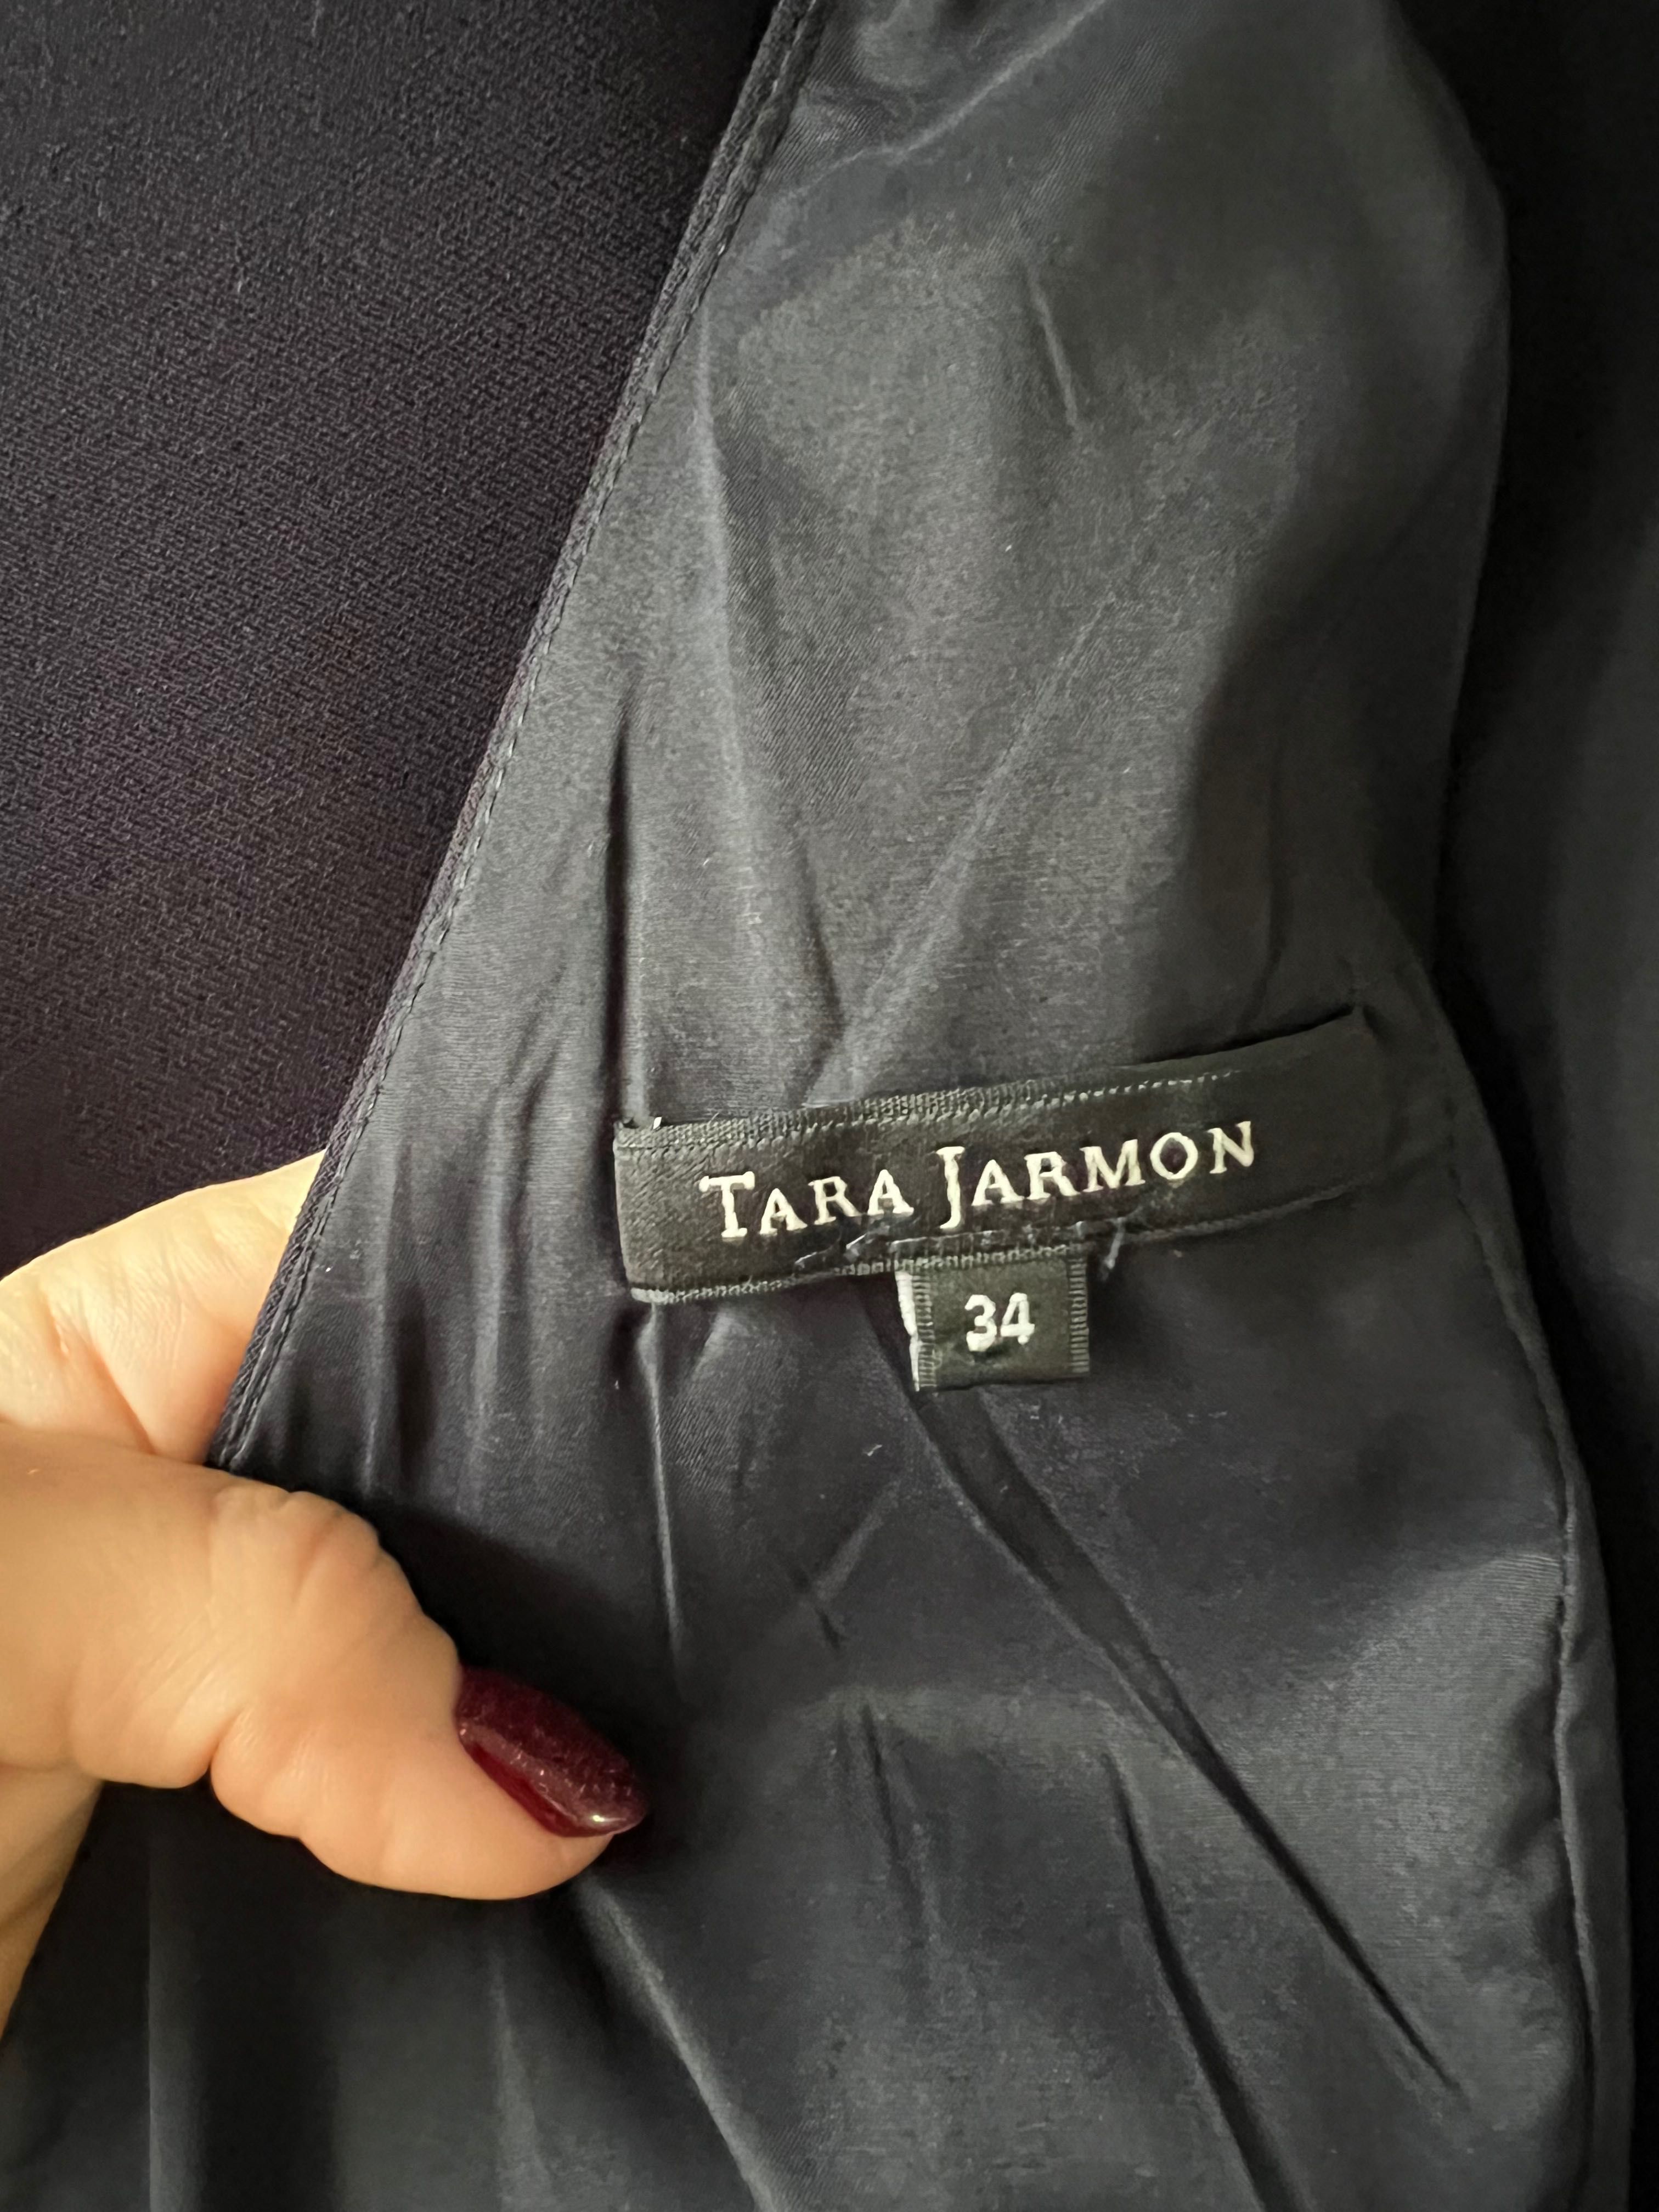 Tara Jarmon рокля, FR 34